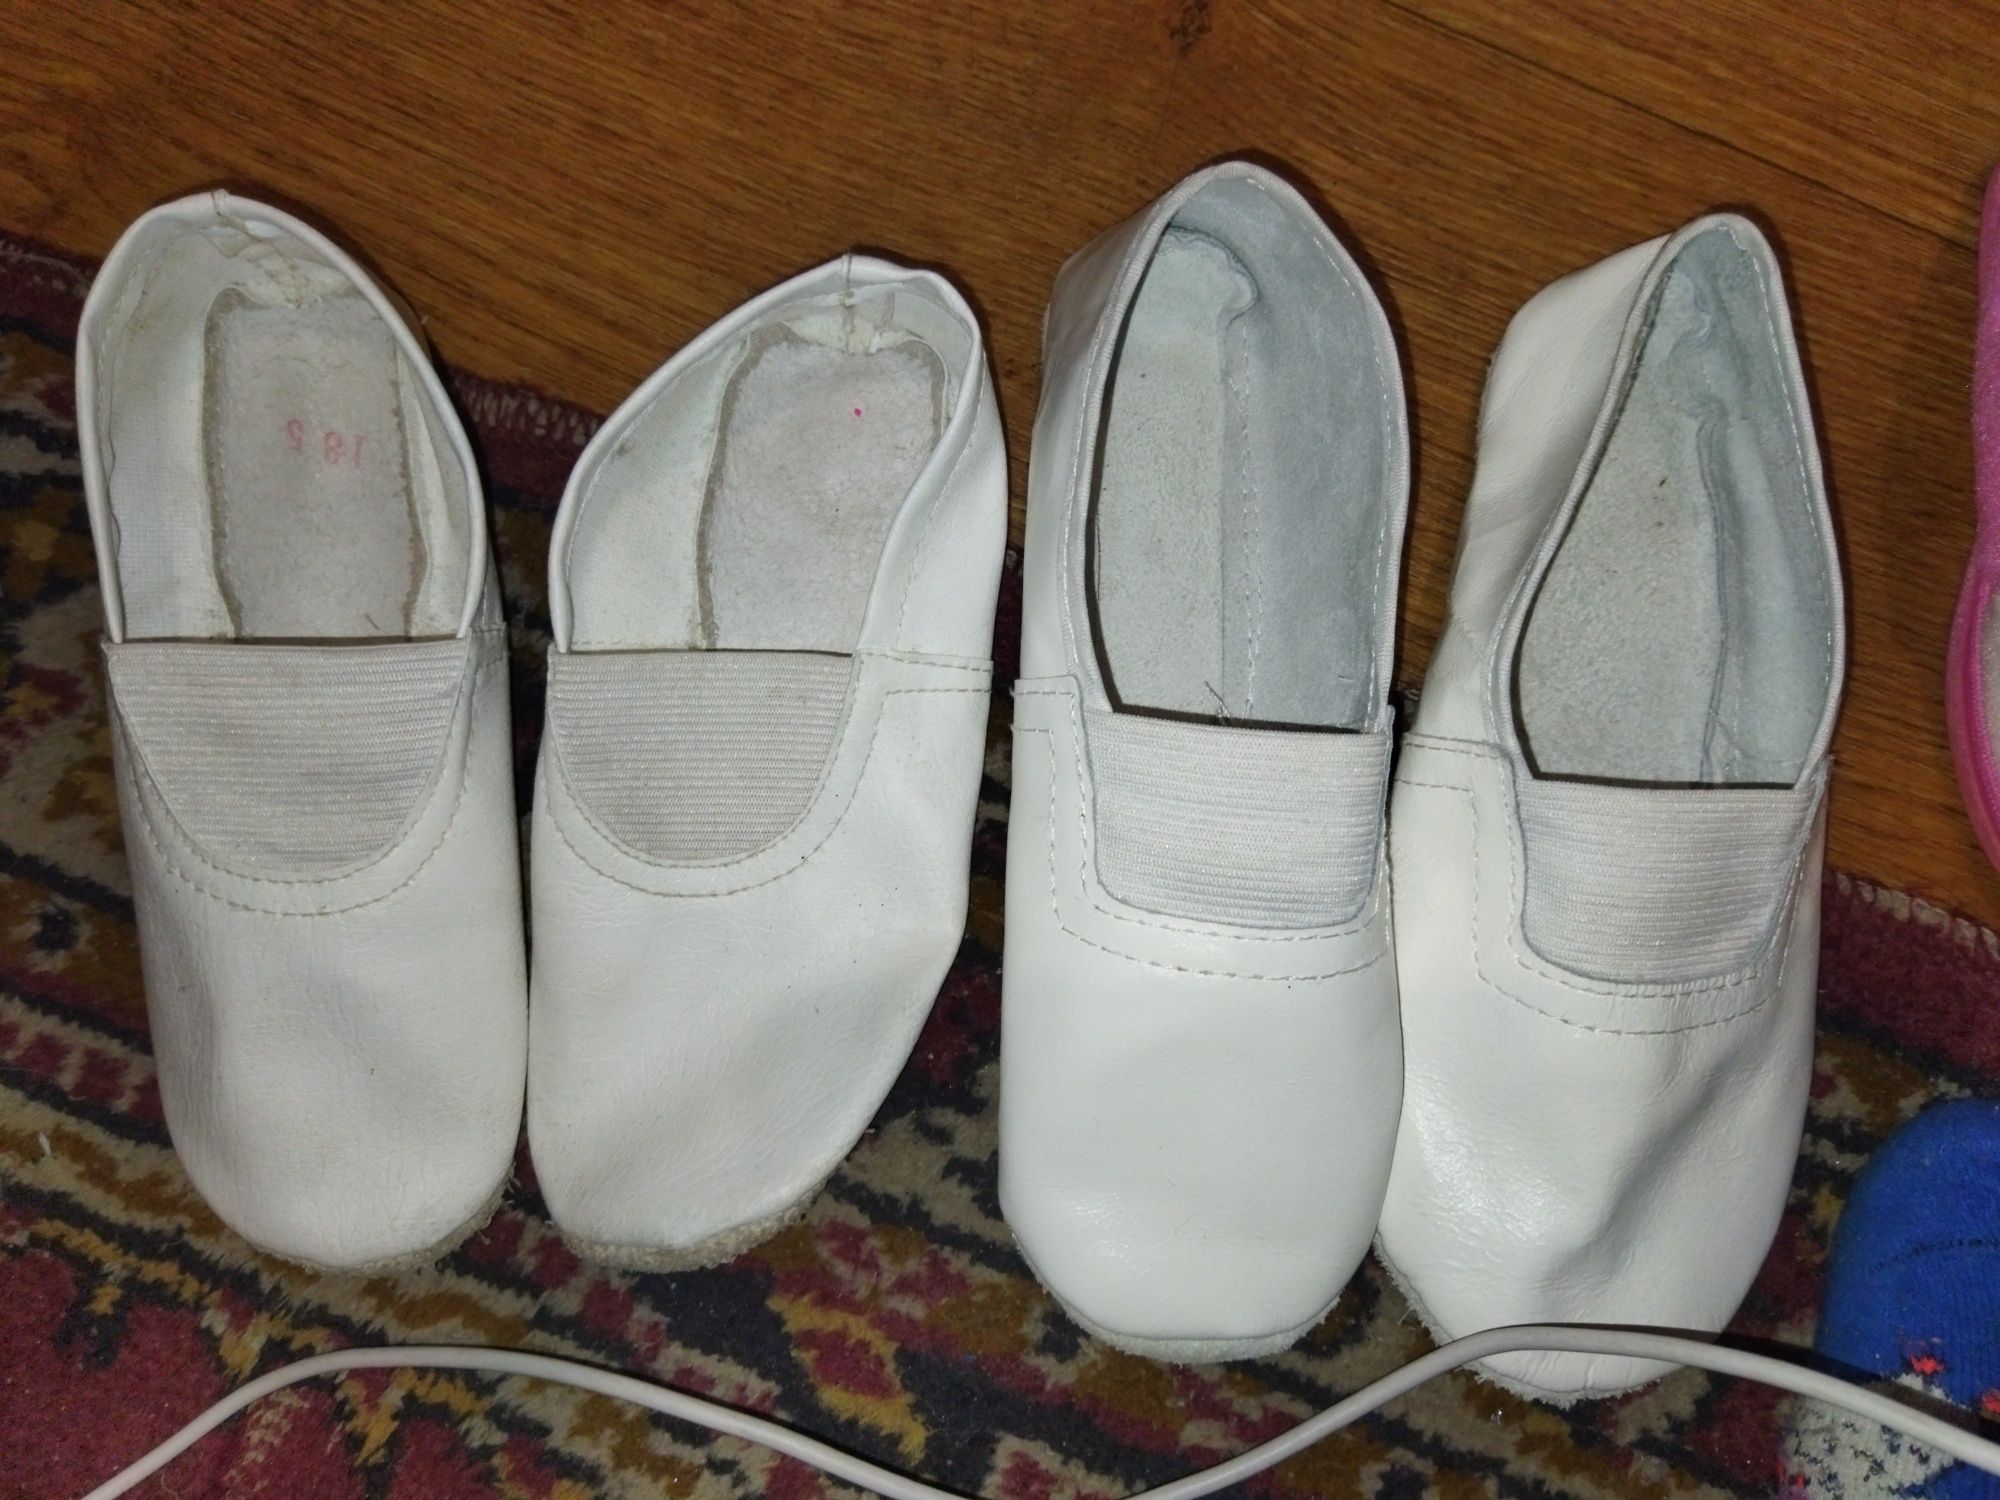 туфлі кросівки резиннові сапоги гумові чоботи мокасини чешки тапочки